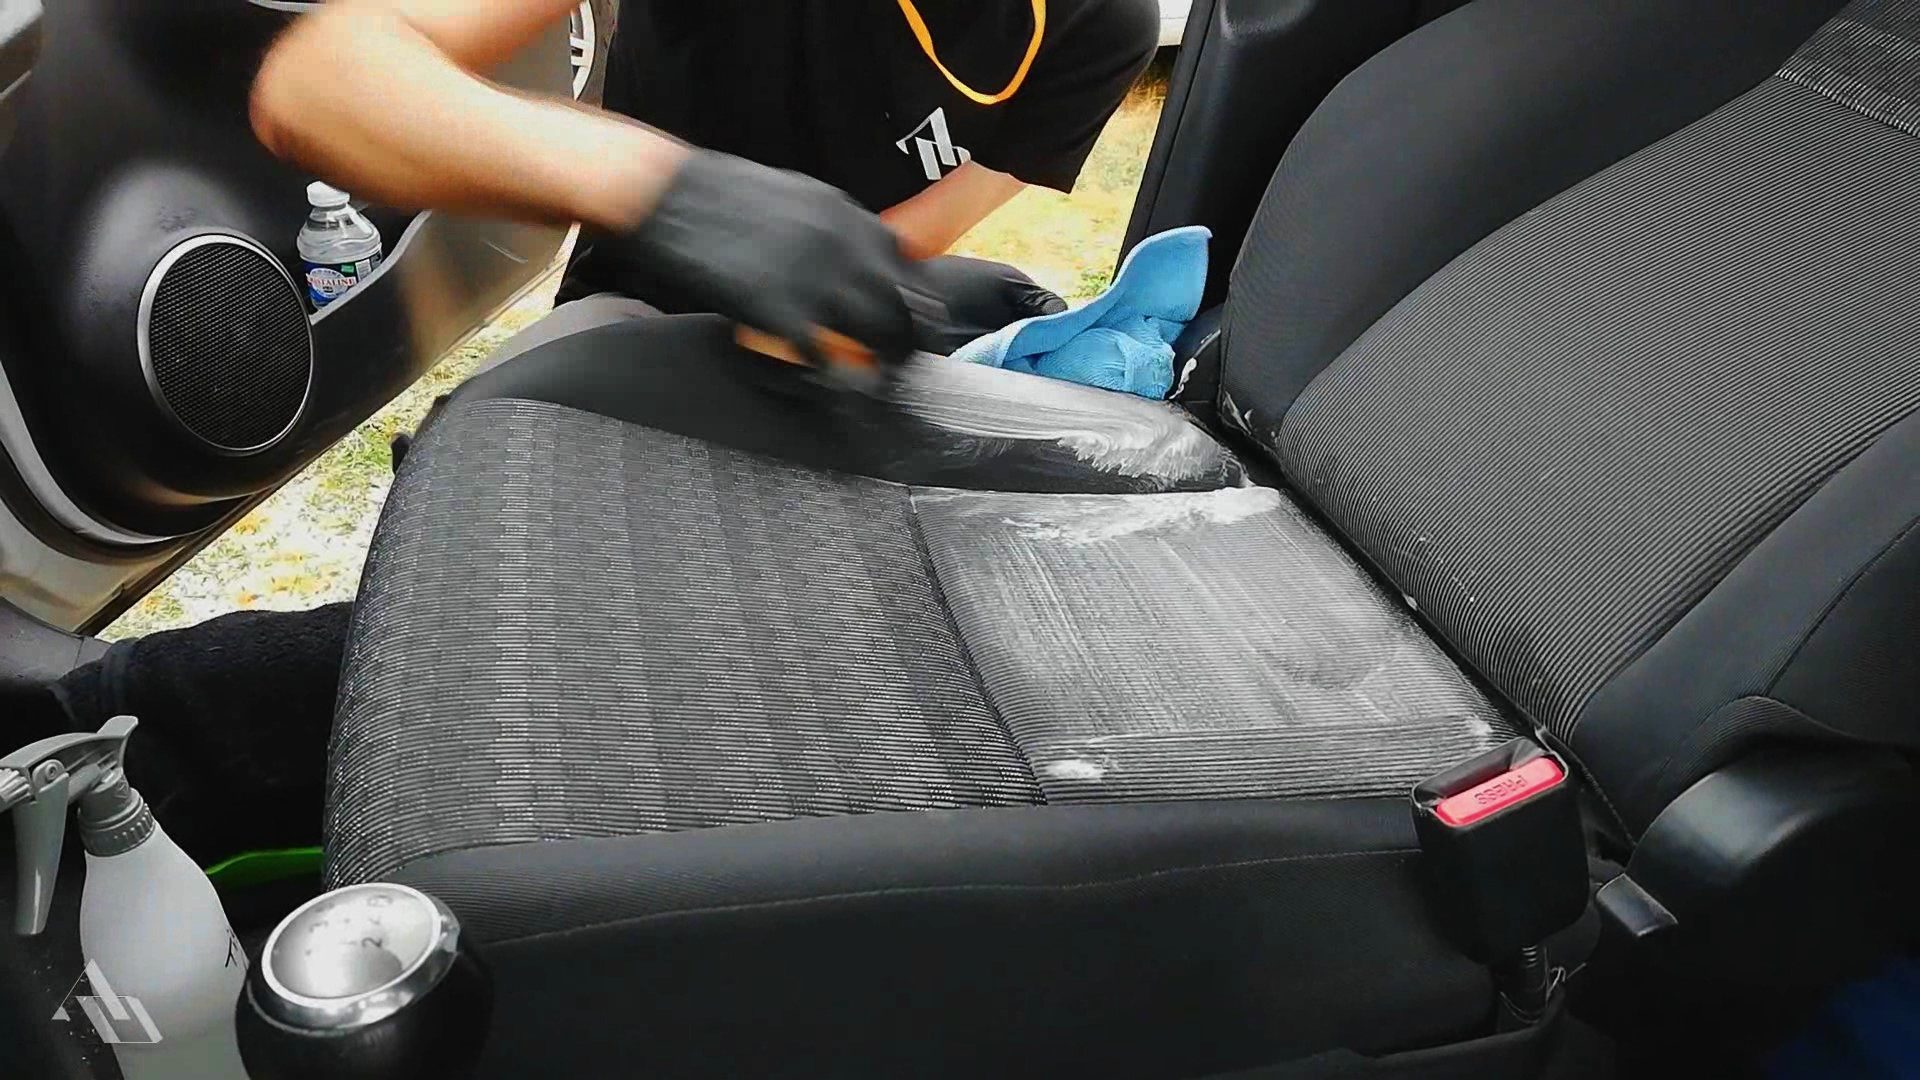 Comment nettoyer facilement un siège de voiture ? - Le Blog du Detailing